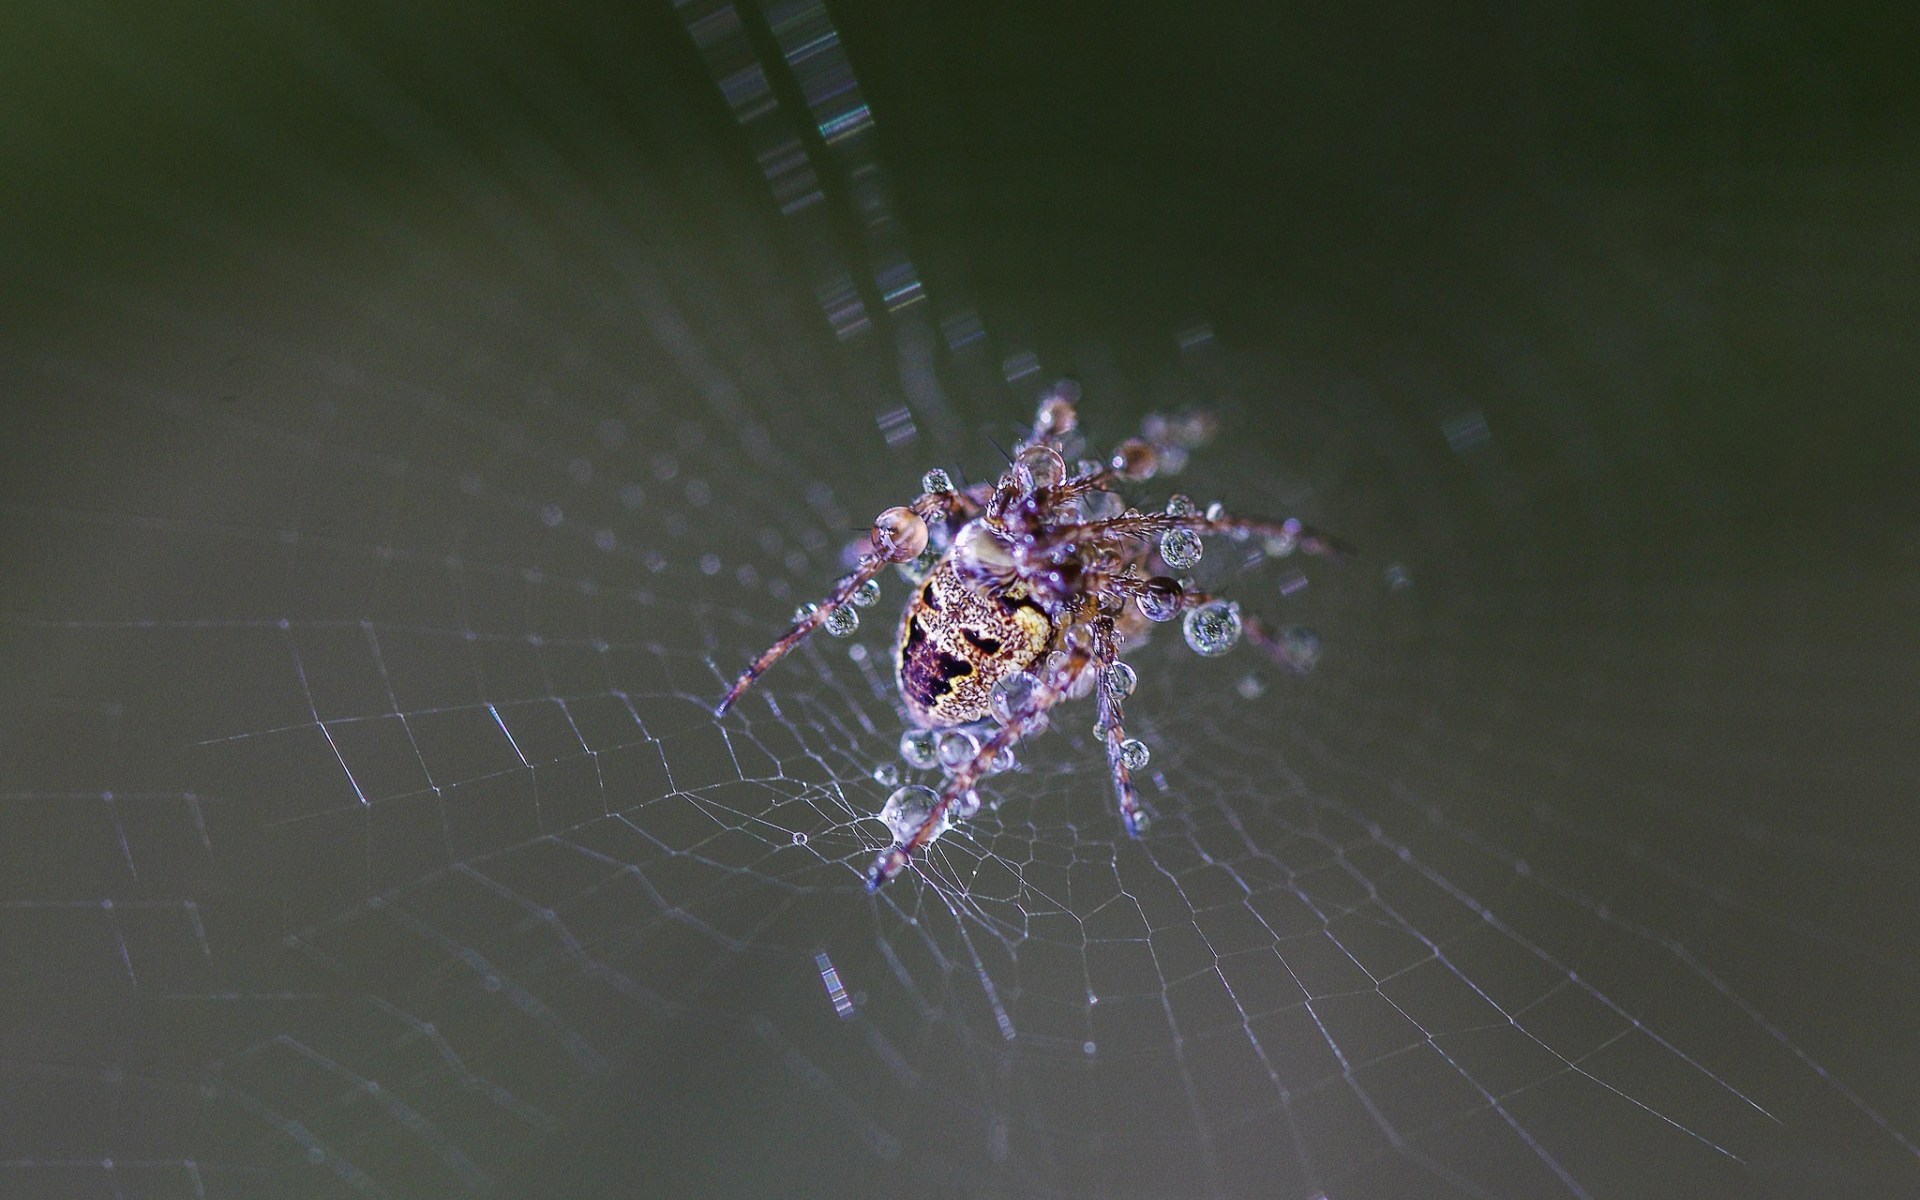 web, drops, wet, spider